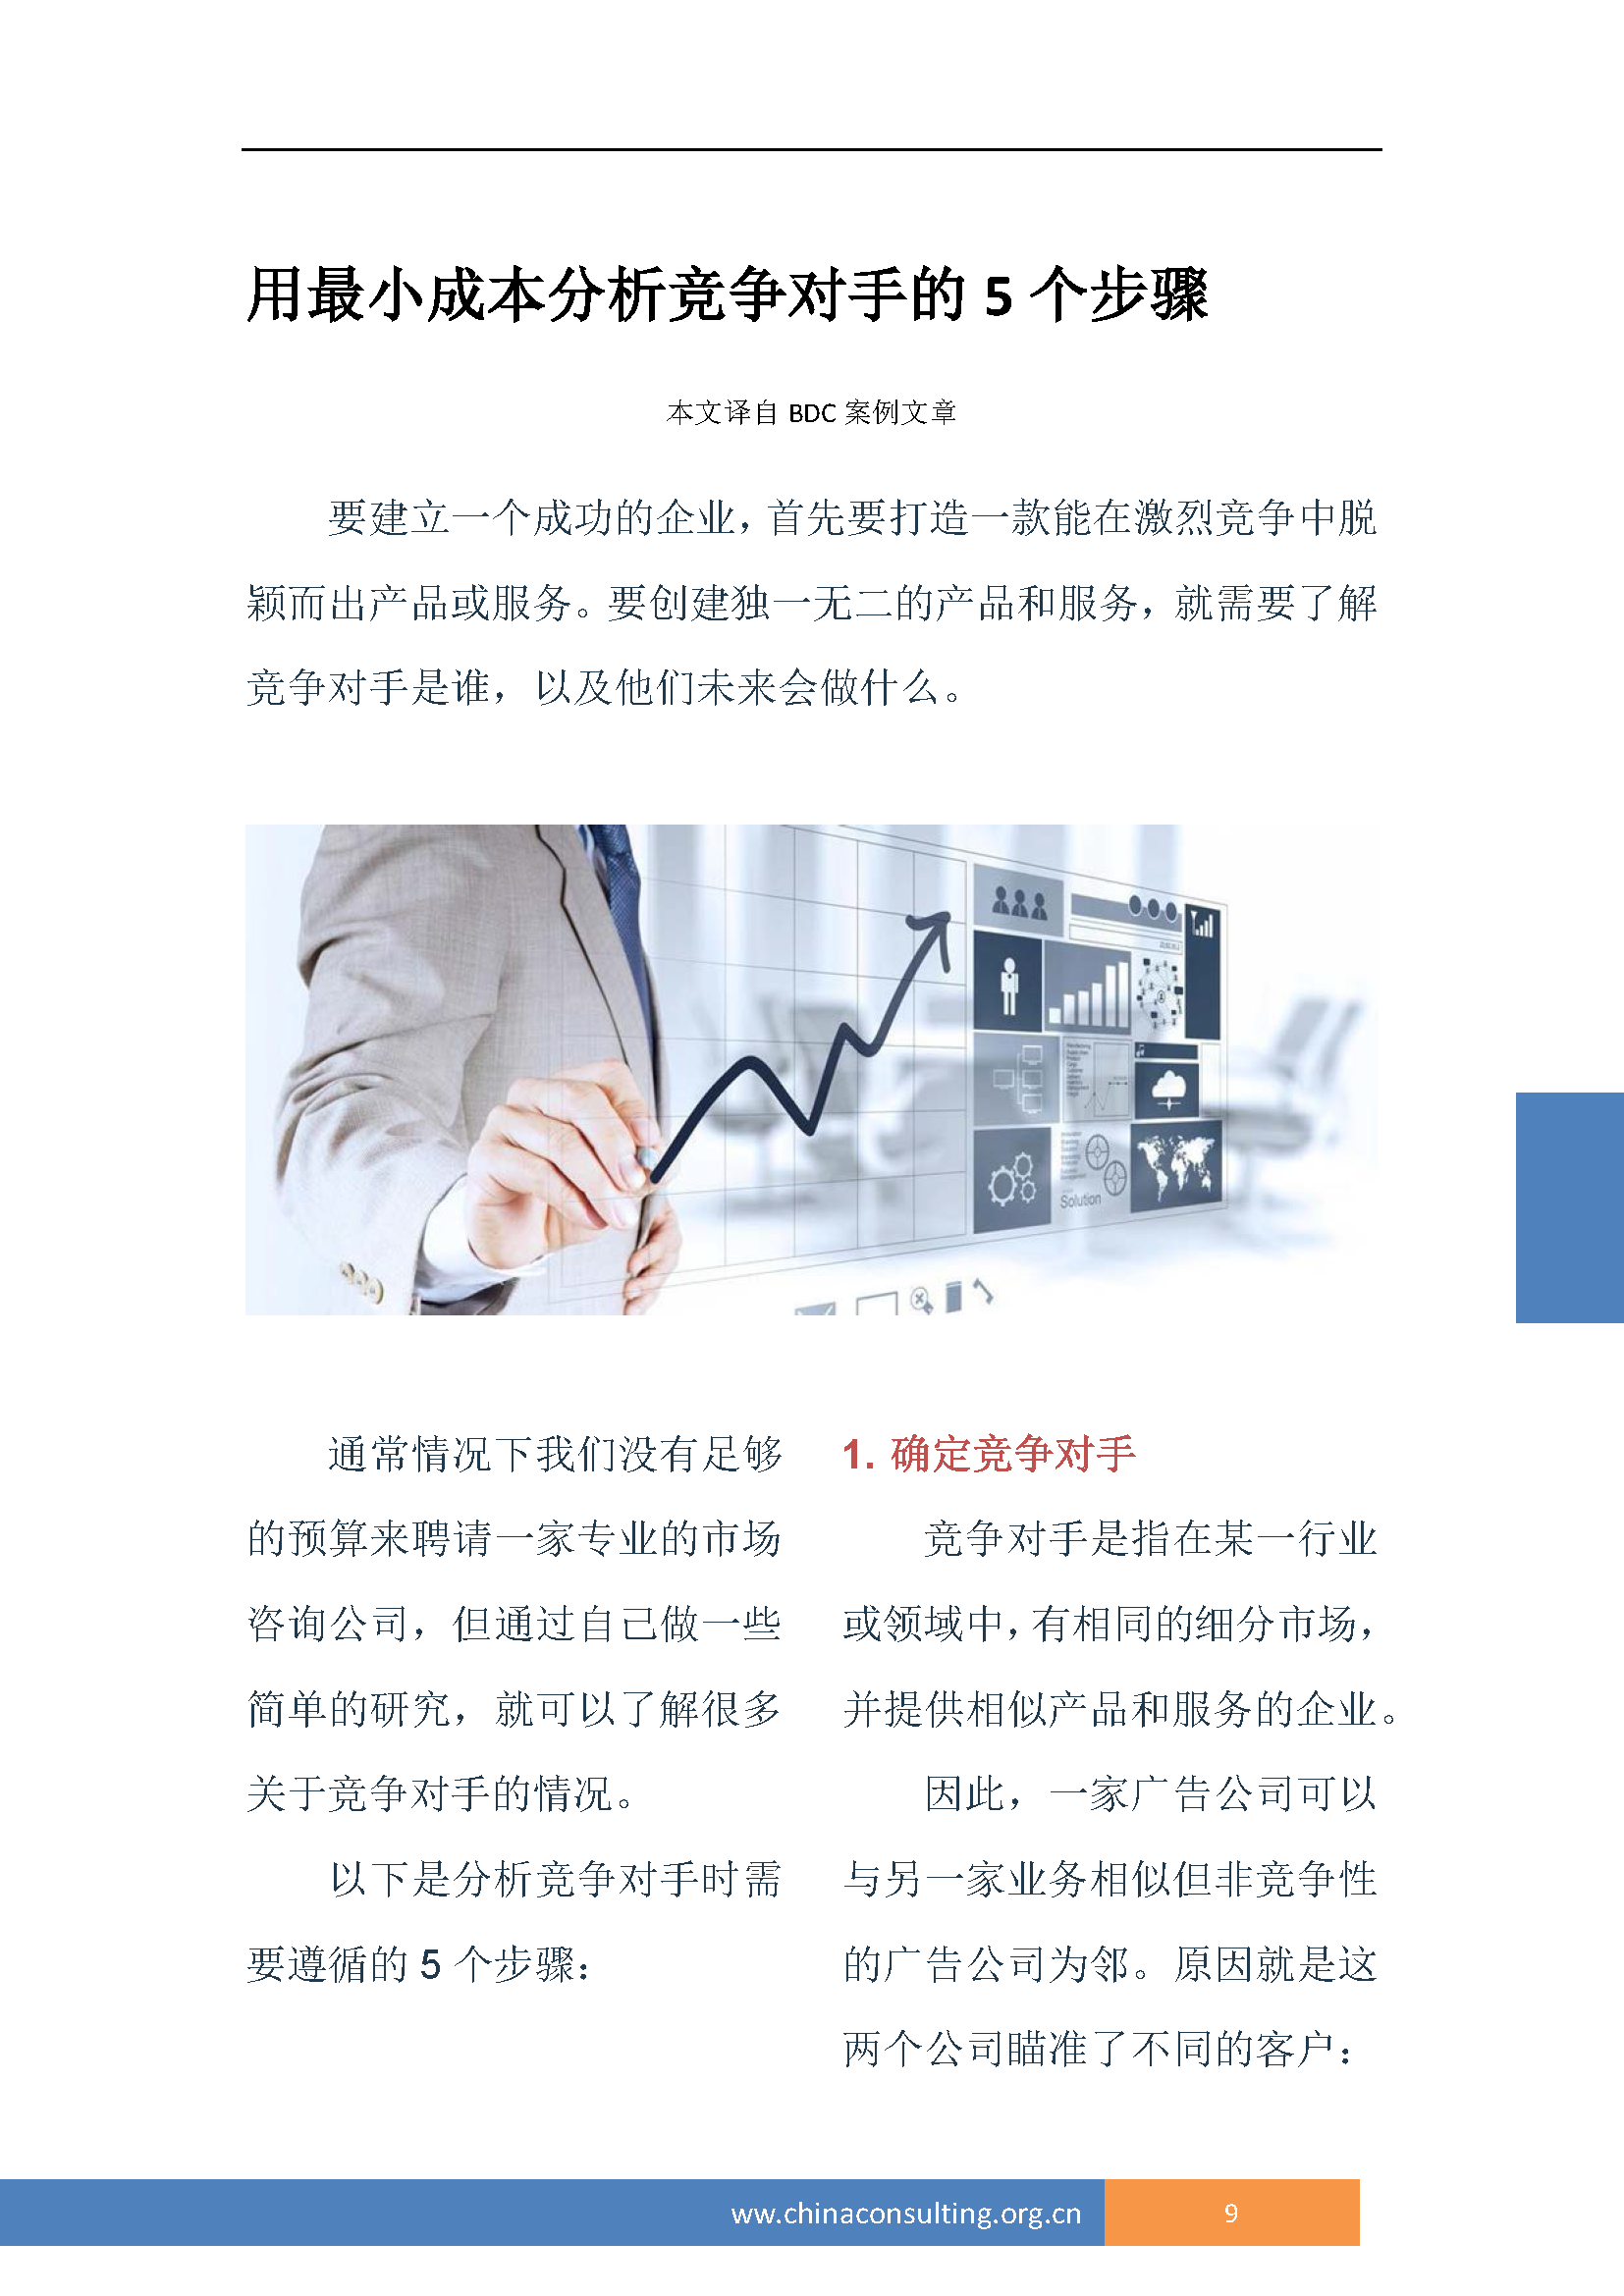 中国科技咨询协会国际快讯（第三十二期）_页面_12.png